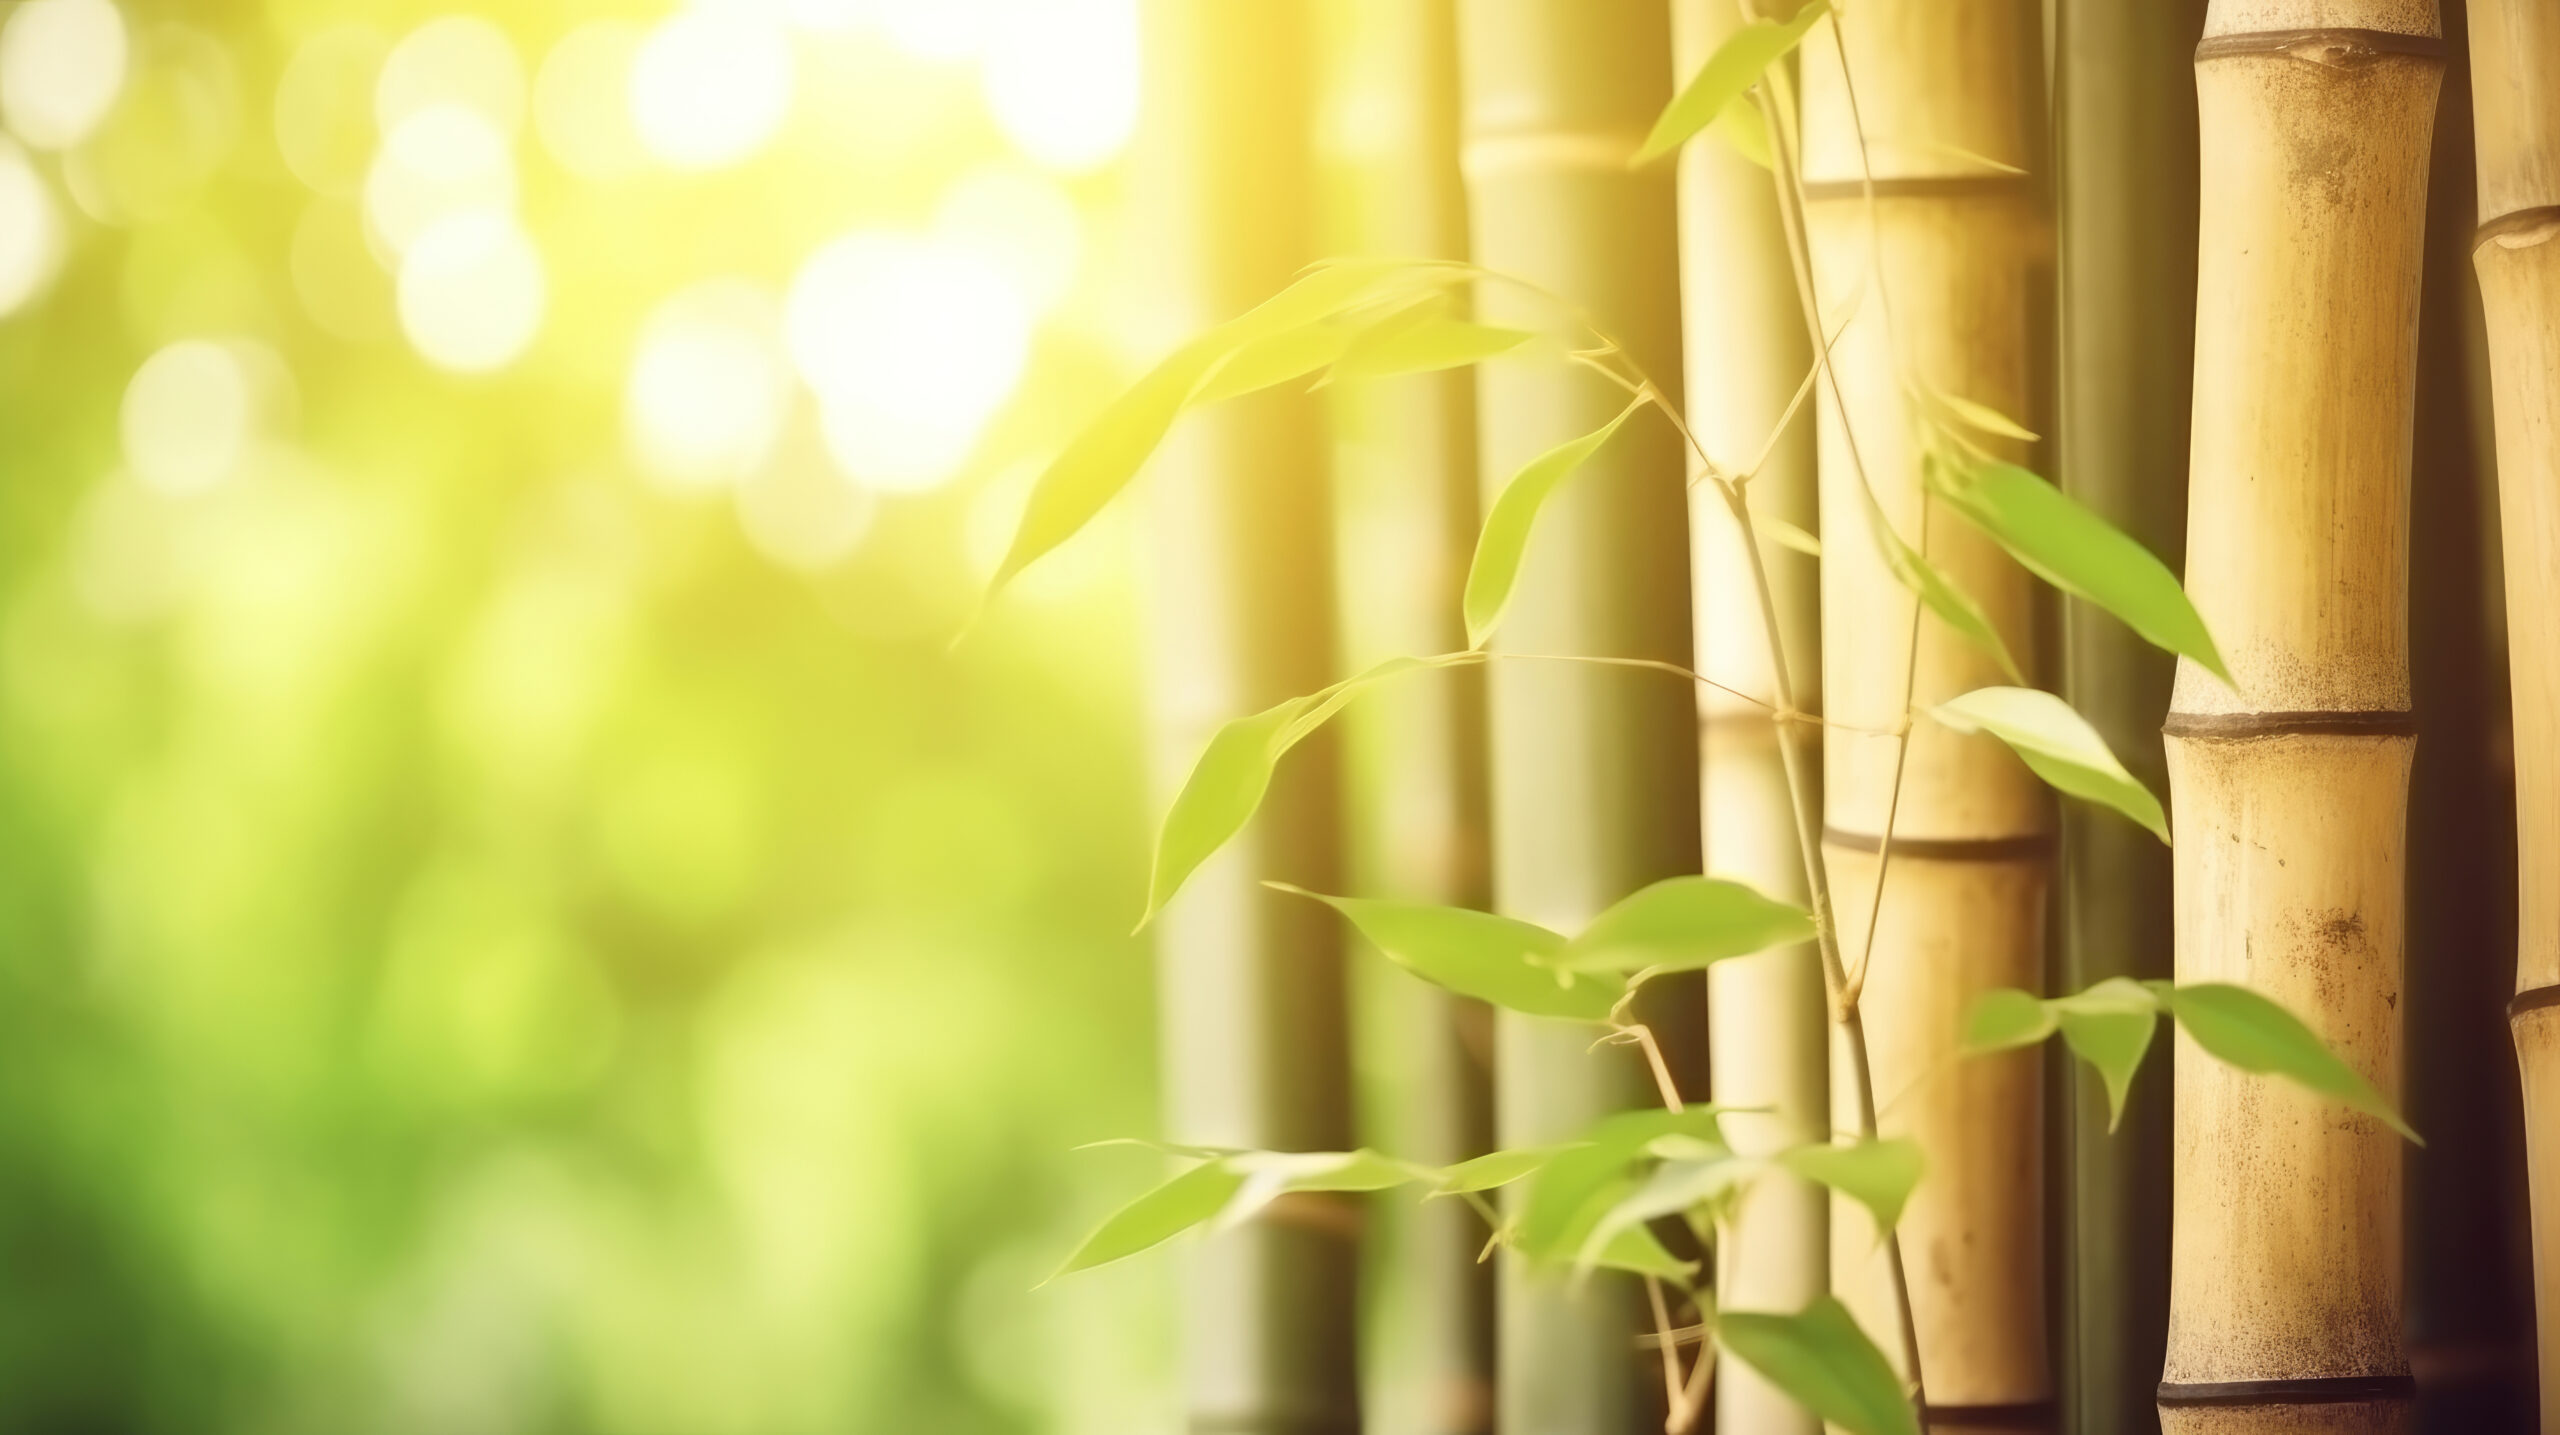 Na obrazku widoczny jest urokliwy bambus na żywopłot, który sprawia, że ogród nabiera wyjątkowego charakteru. Jego gęste, zielone pędy tworzą naturalną barierę, zapewniającą prywatność i ochronę. Bambus na żywopłot dodaje także egzotycznego uroku i harmonii do otoczenia, tworząc spokojną atmosferę wokół